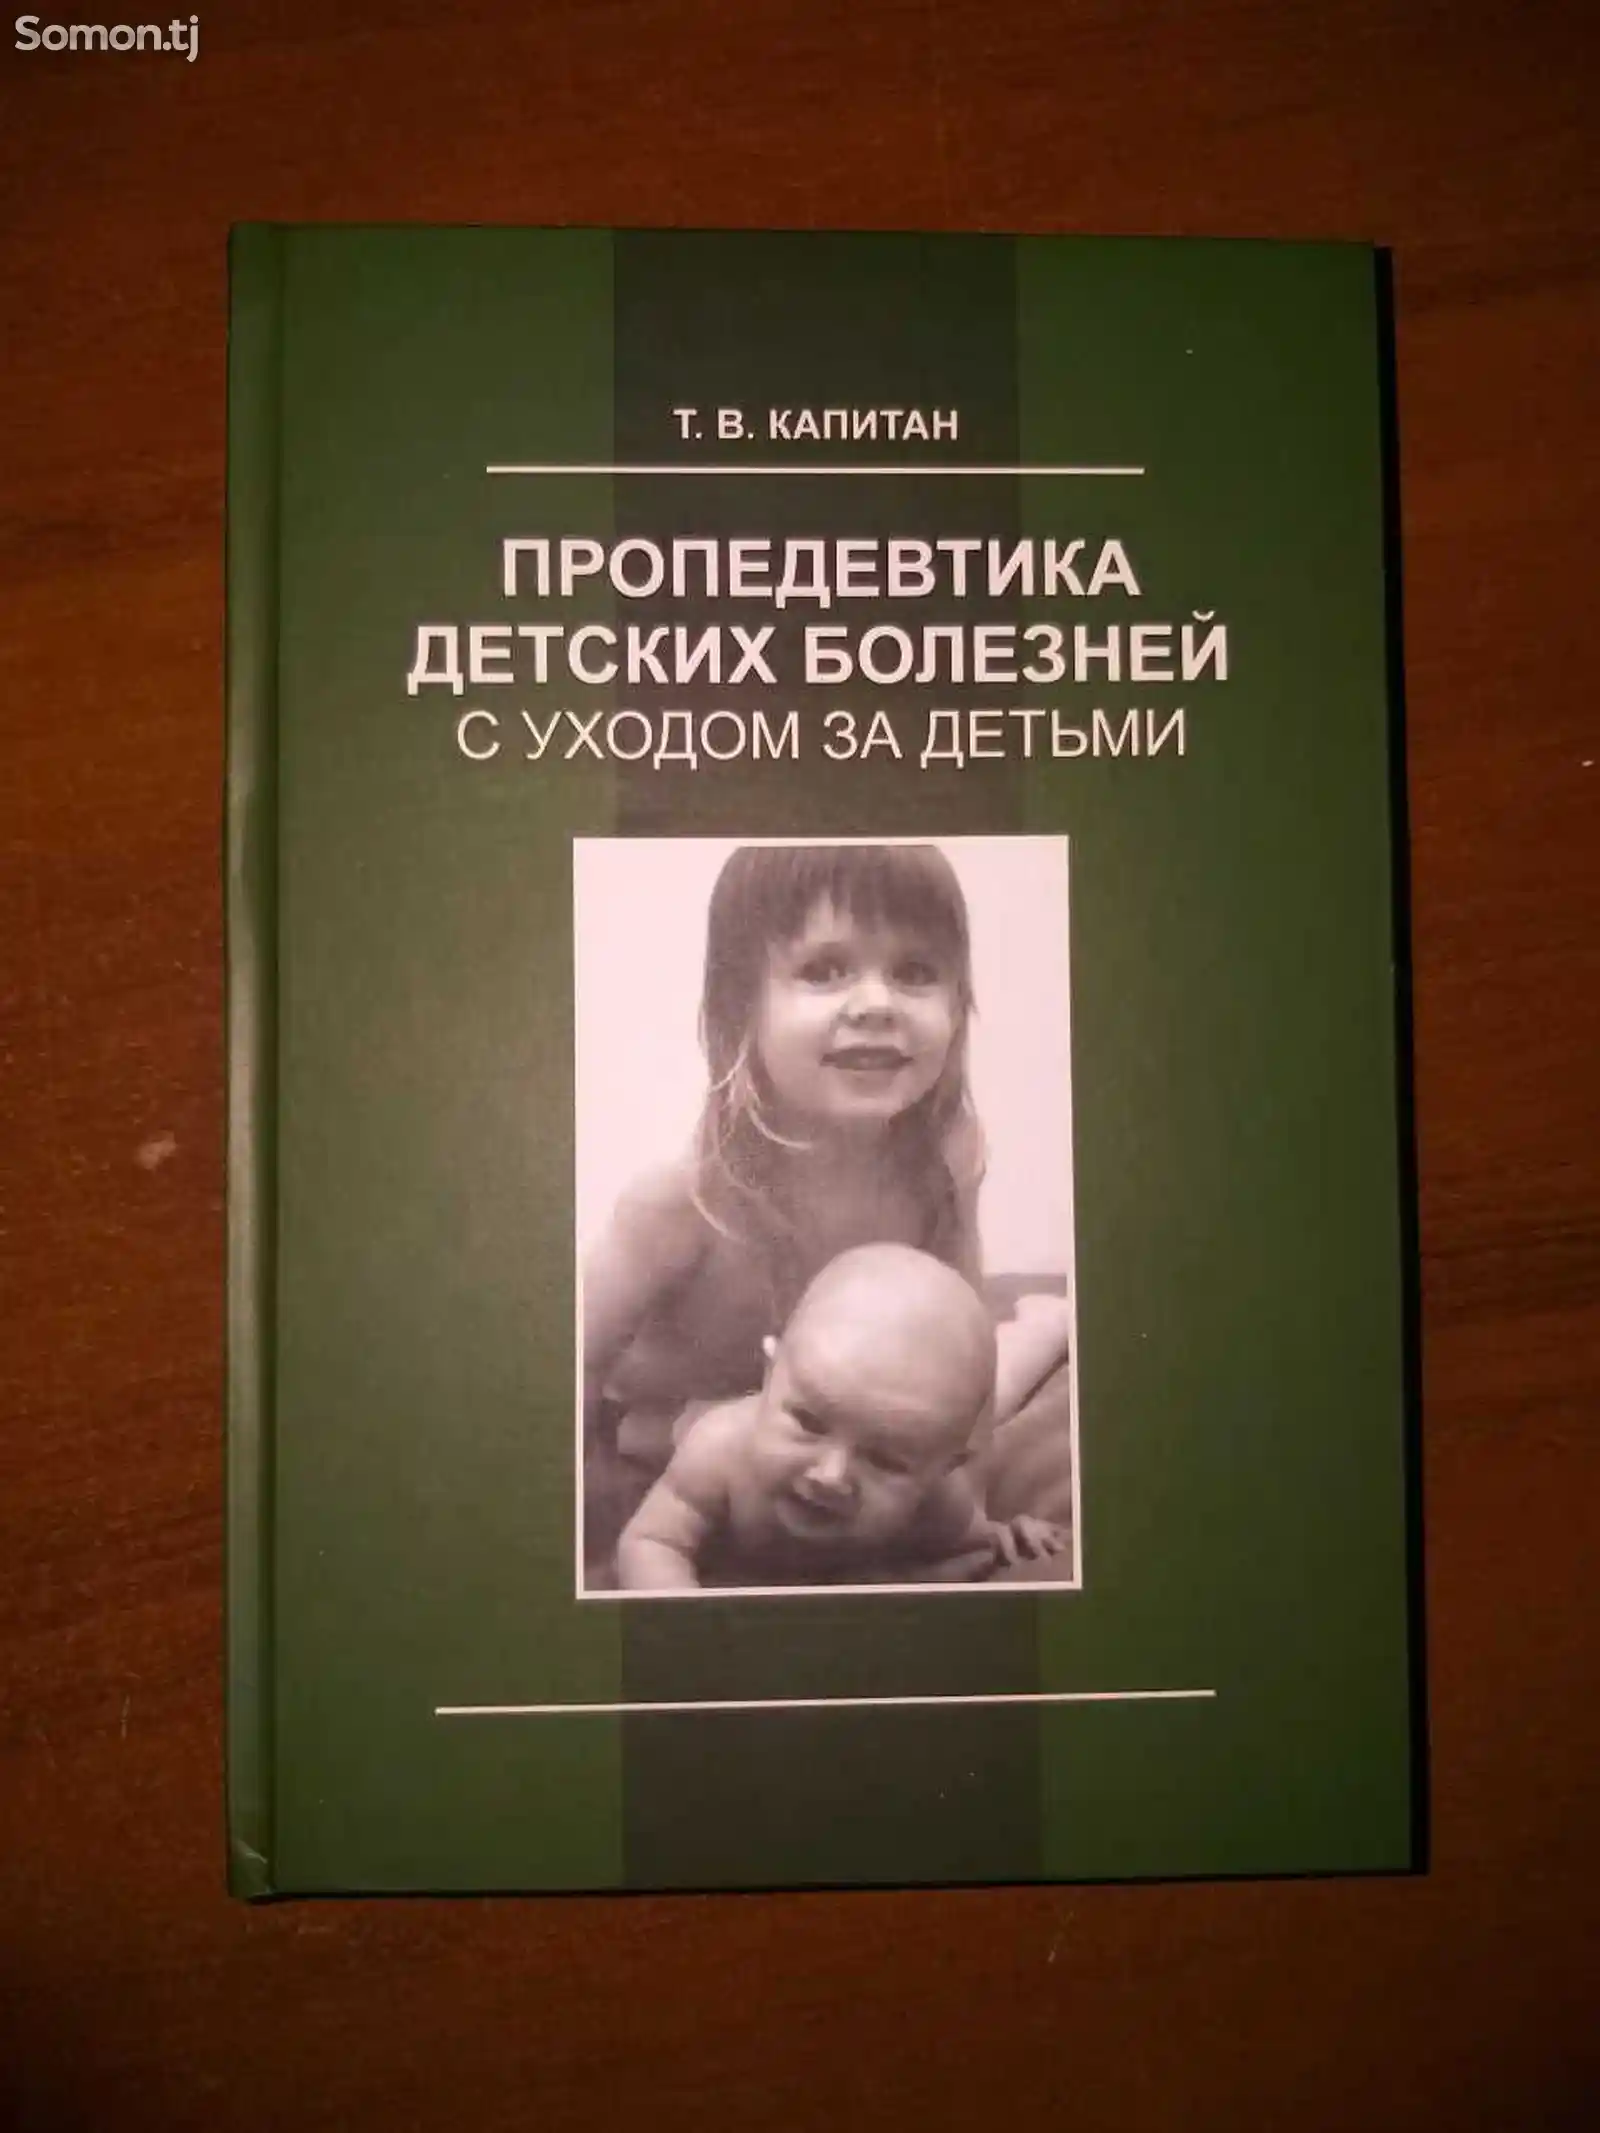 Книга Пропедевтика детских болезней Капитан